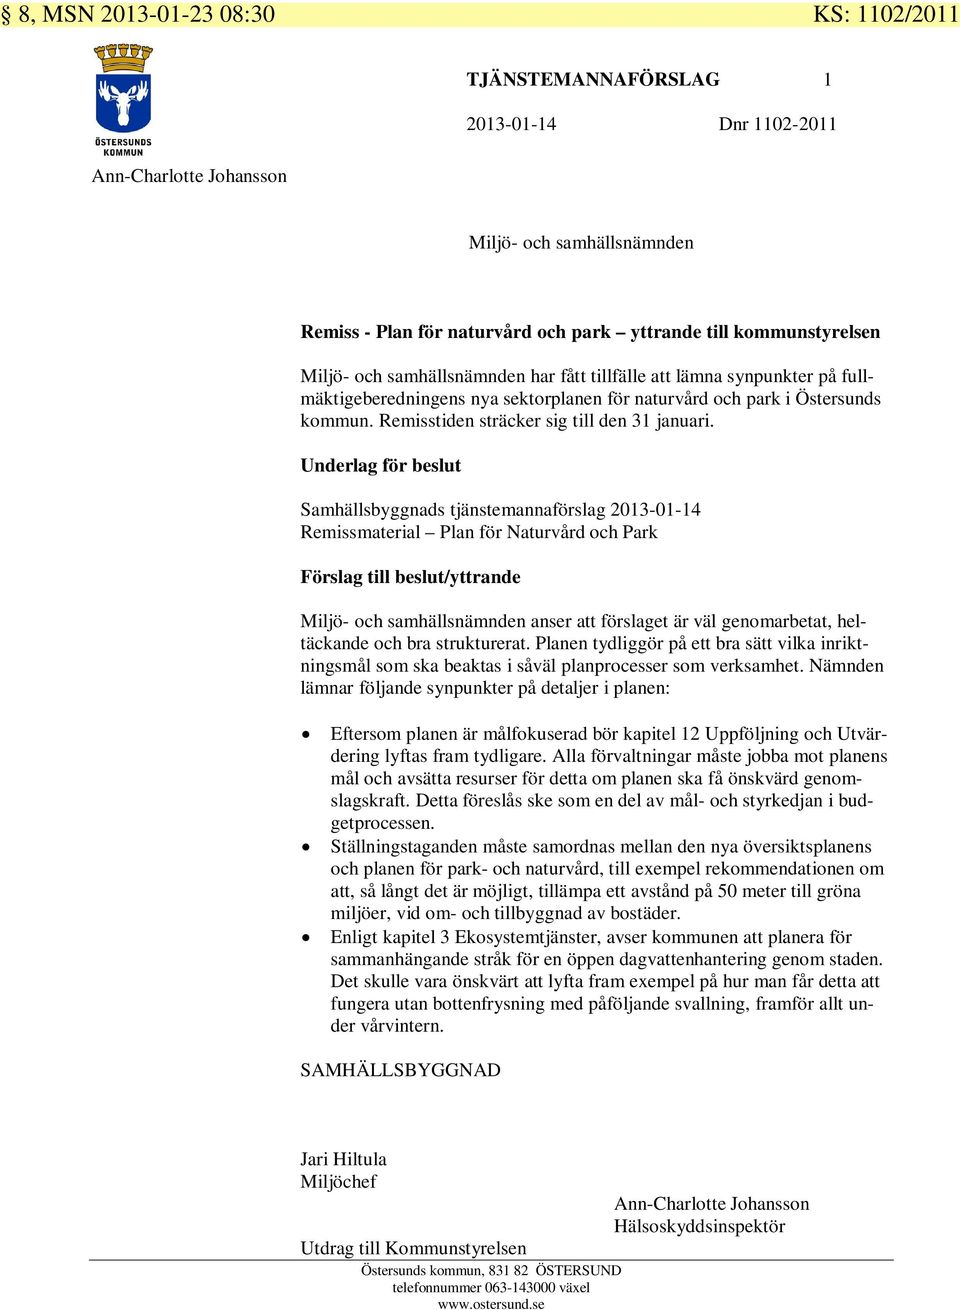 Underlag för beslut Samhällsbyggnads tjänstemannaförslag 2013-01-14 Remissmaterial Plan för Naturvård och Park Förslag till beslut/yttrande anser att förslaget är väl genomarbetat, heltäckande och